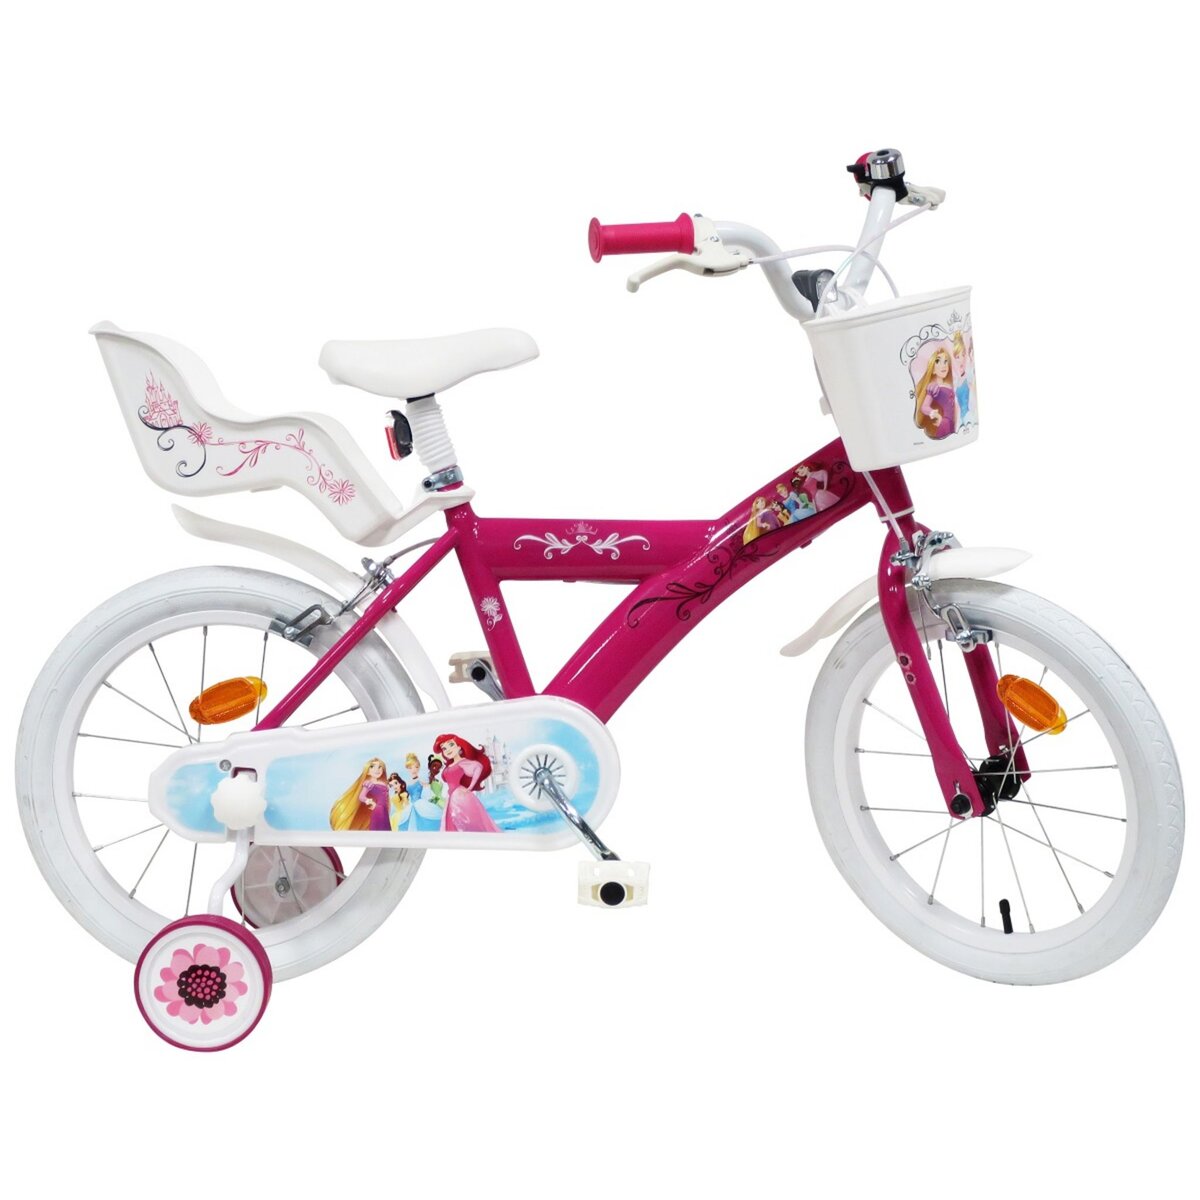 Vélo 12 Fille Licence Reine des Neiges pour enfant de 3 à 5 ans avec  stabilisateurs à molettes - Panier avant - 1 frein au meilleur prix